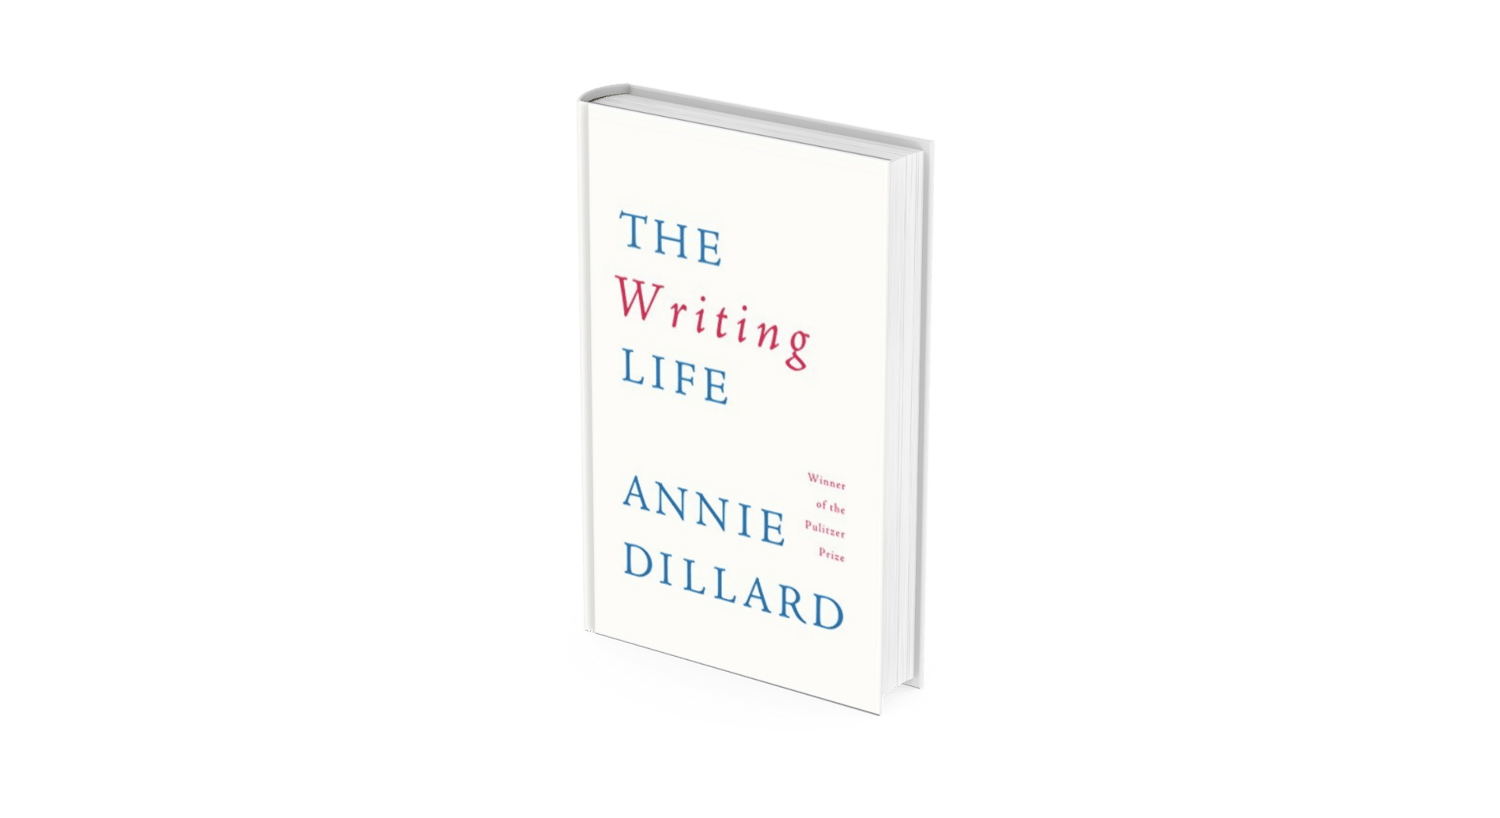 The Writing Life, Annie Dillard